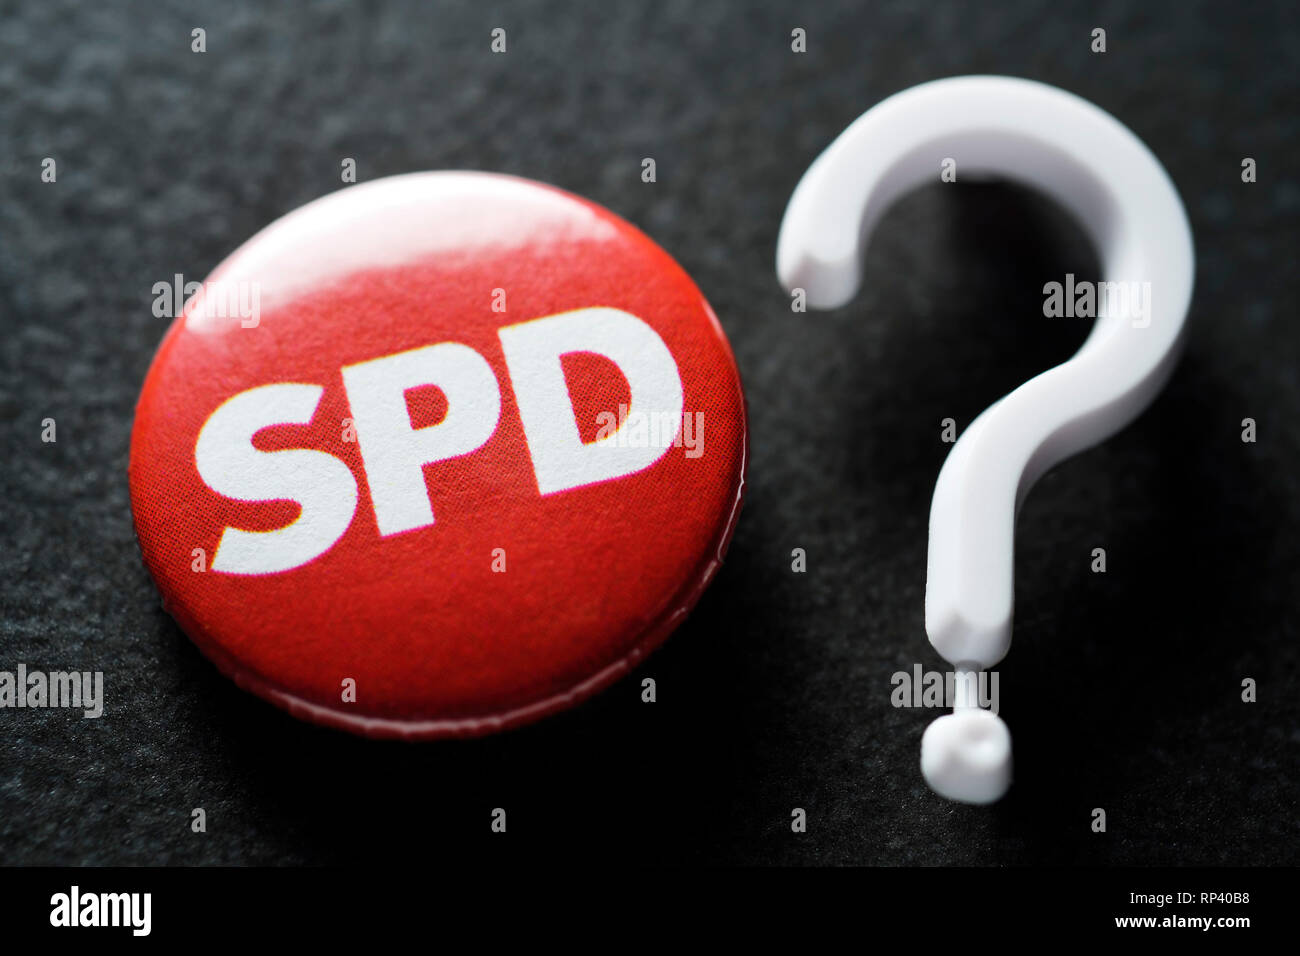 Anstecker of SPD and question mark, People's Parties in the crisis, Anstecker der SPD und Fragezeichen, Volksparteien in der Krise Stock Photo